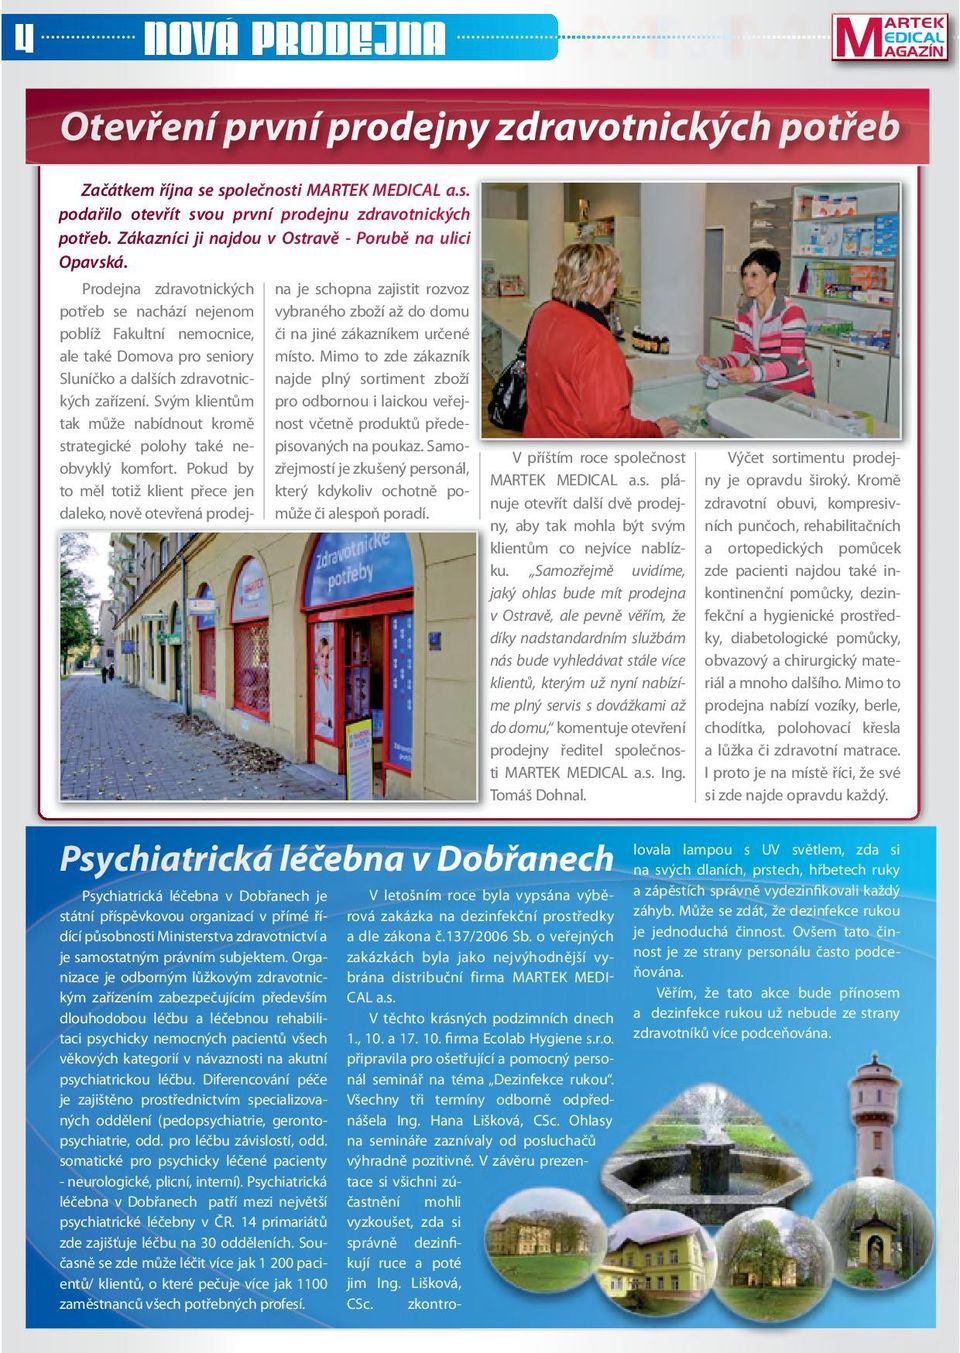 Psychiatrická léčebna v Dobřanech je státní příspěvkovou organizací v přímé řídící působnosti Ministerstva zdravotnictví a je samostatným právním subjektem.